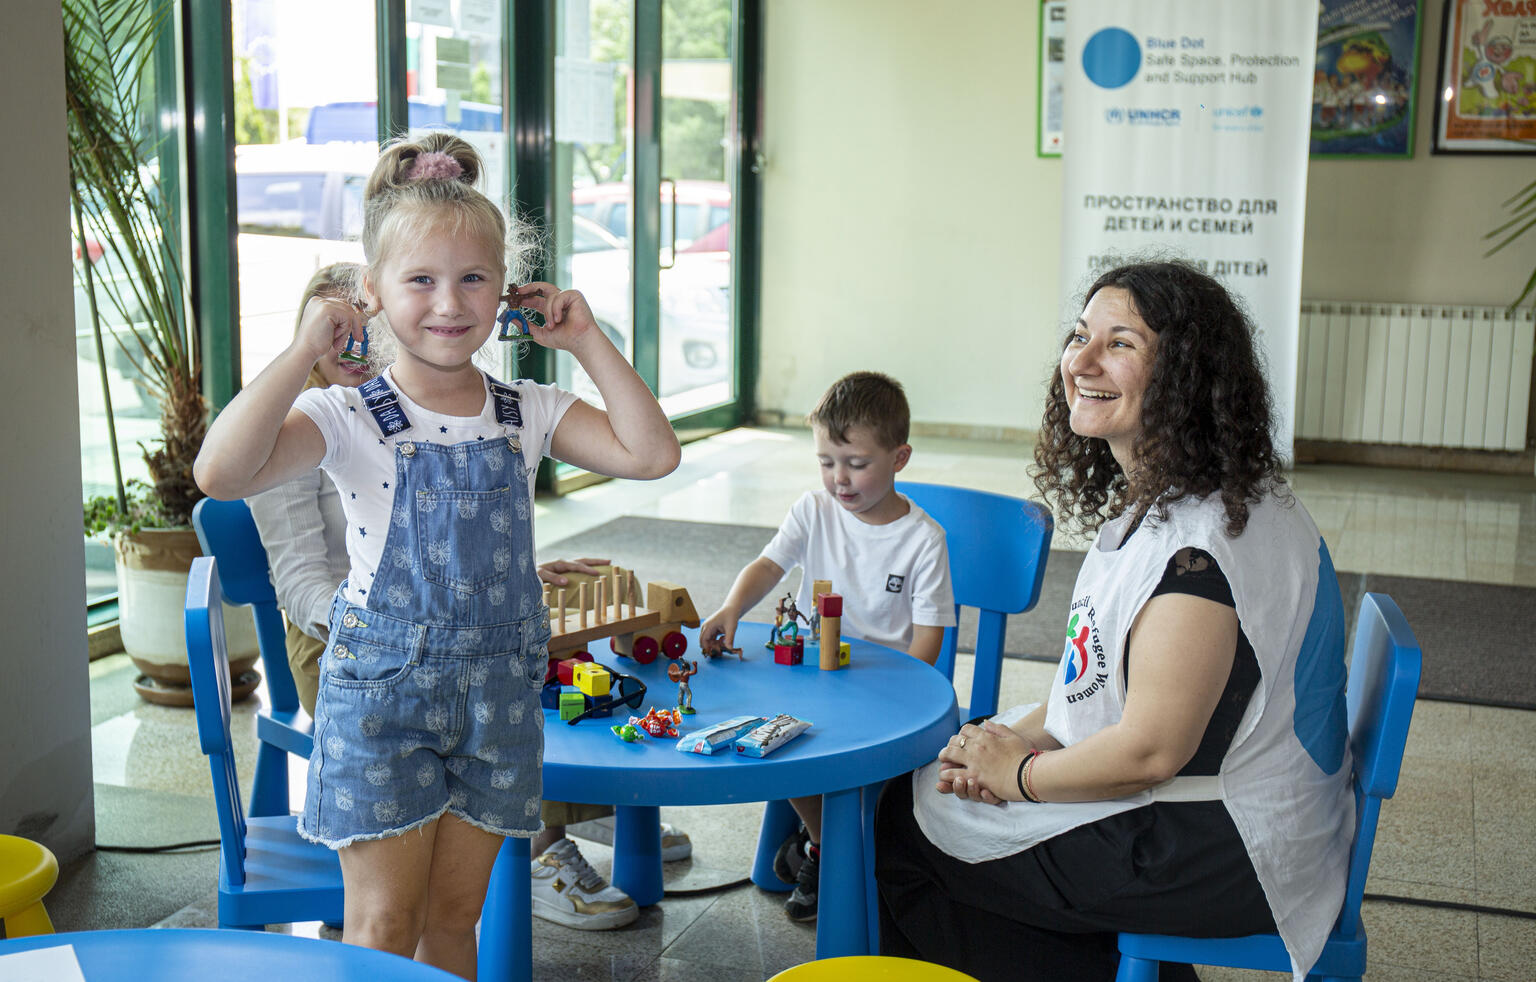 難民の子どもたちと家族への支援を提供する、ユニセフの支援拠点「ブルードット」で遊ぶ子どもたち。（ブルガリア・ソフィア、2022年6月13日撮影）。